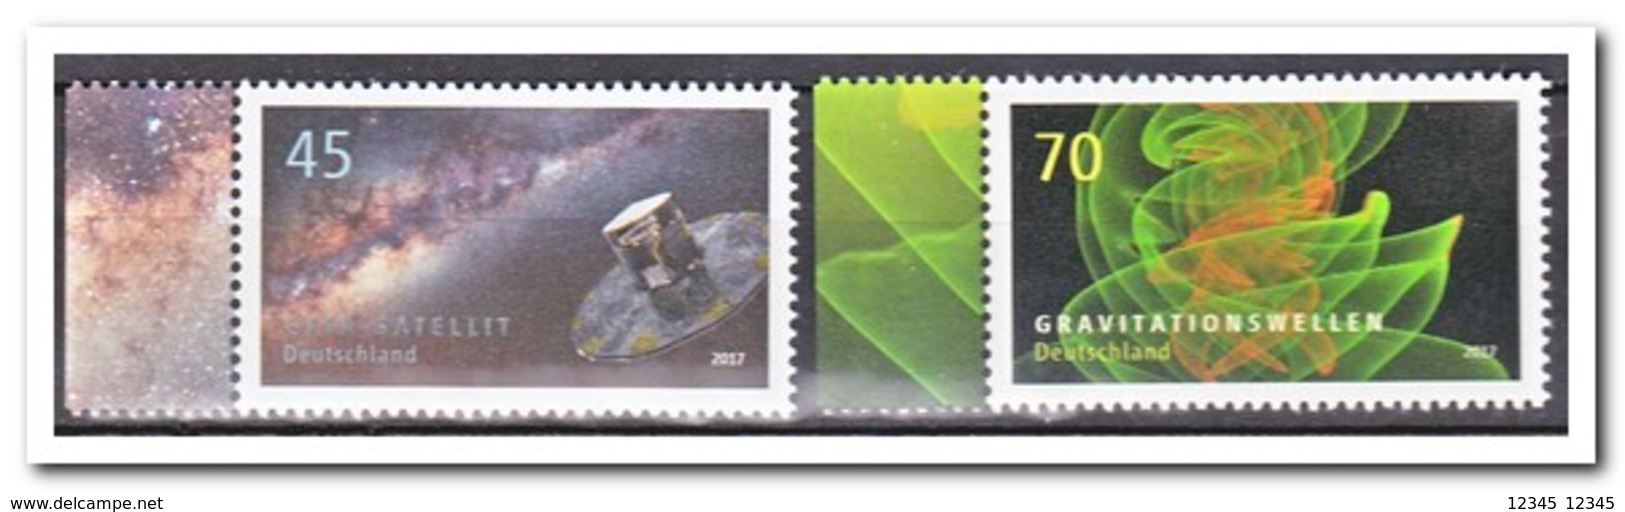 Duitsland 2017, Postfris MNH, MI 3347-48, Astrophysics - Ongebruikt